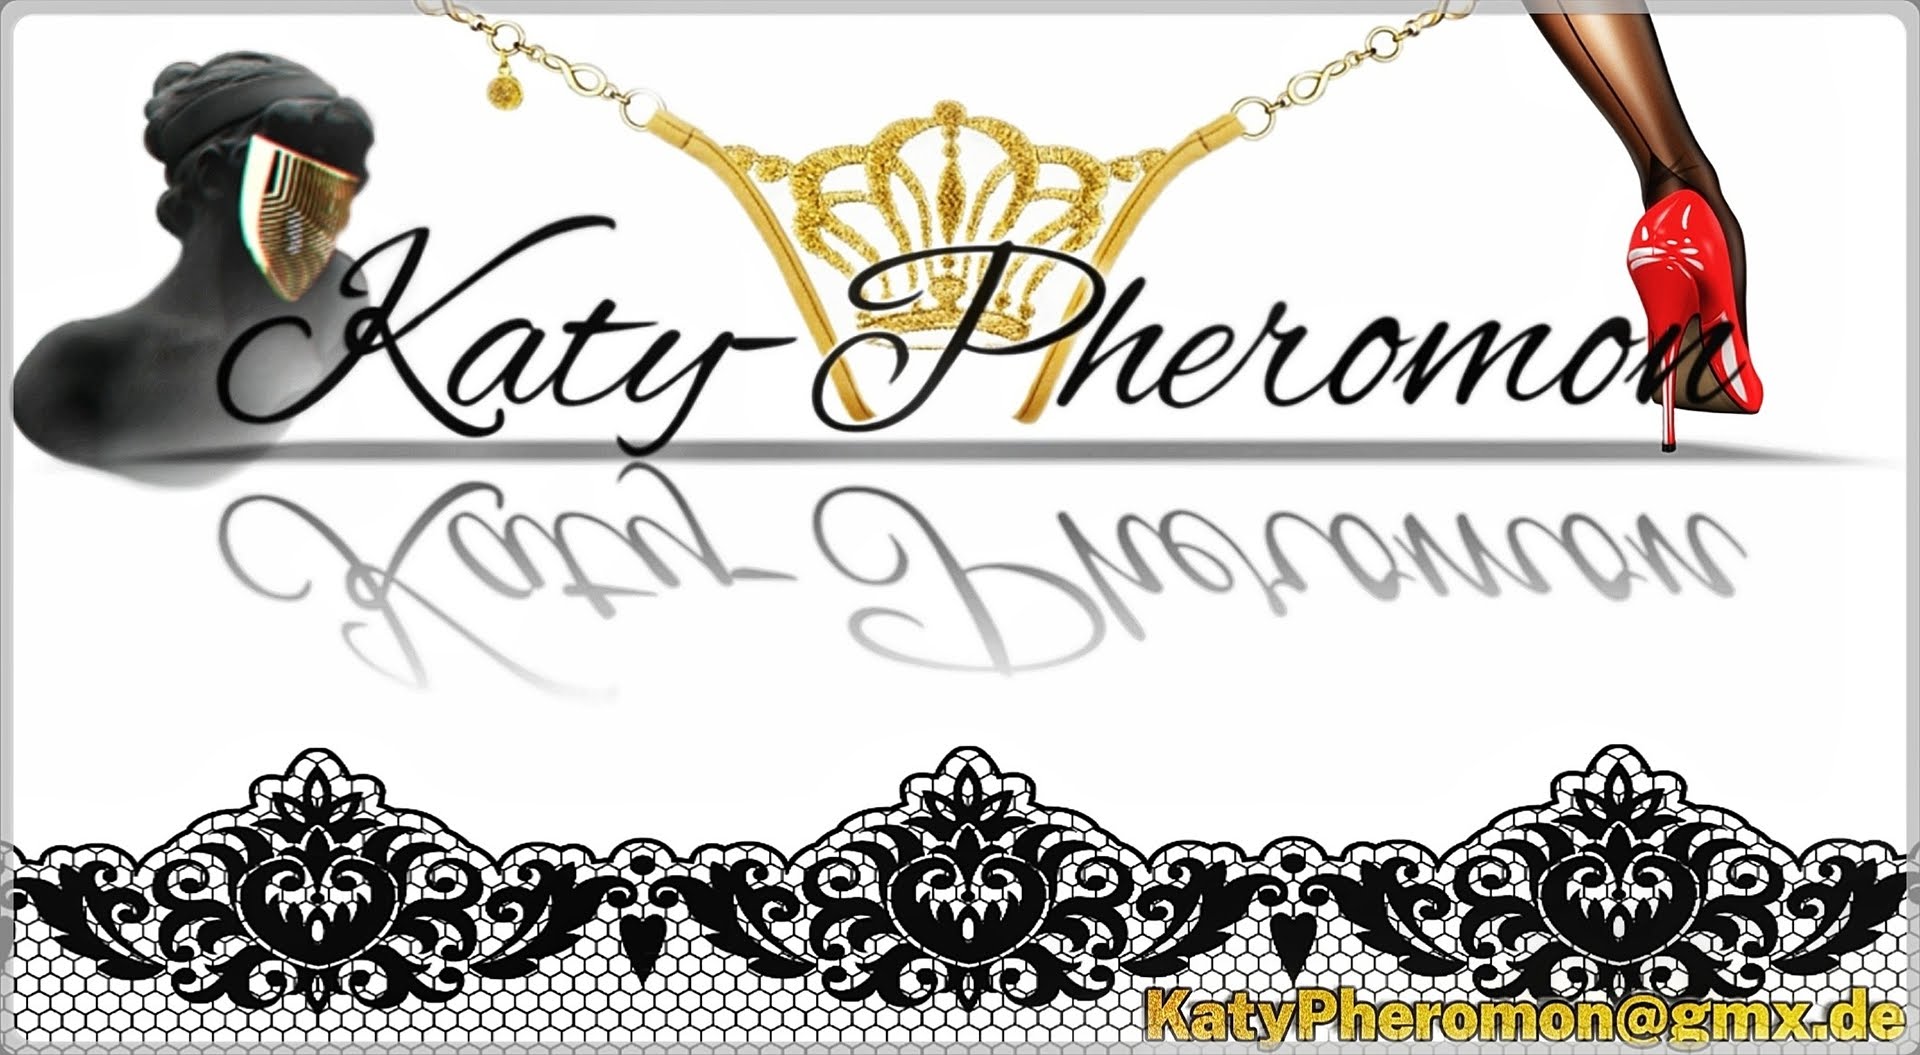 Avatar of Katy-Pheromon